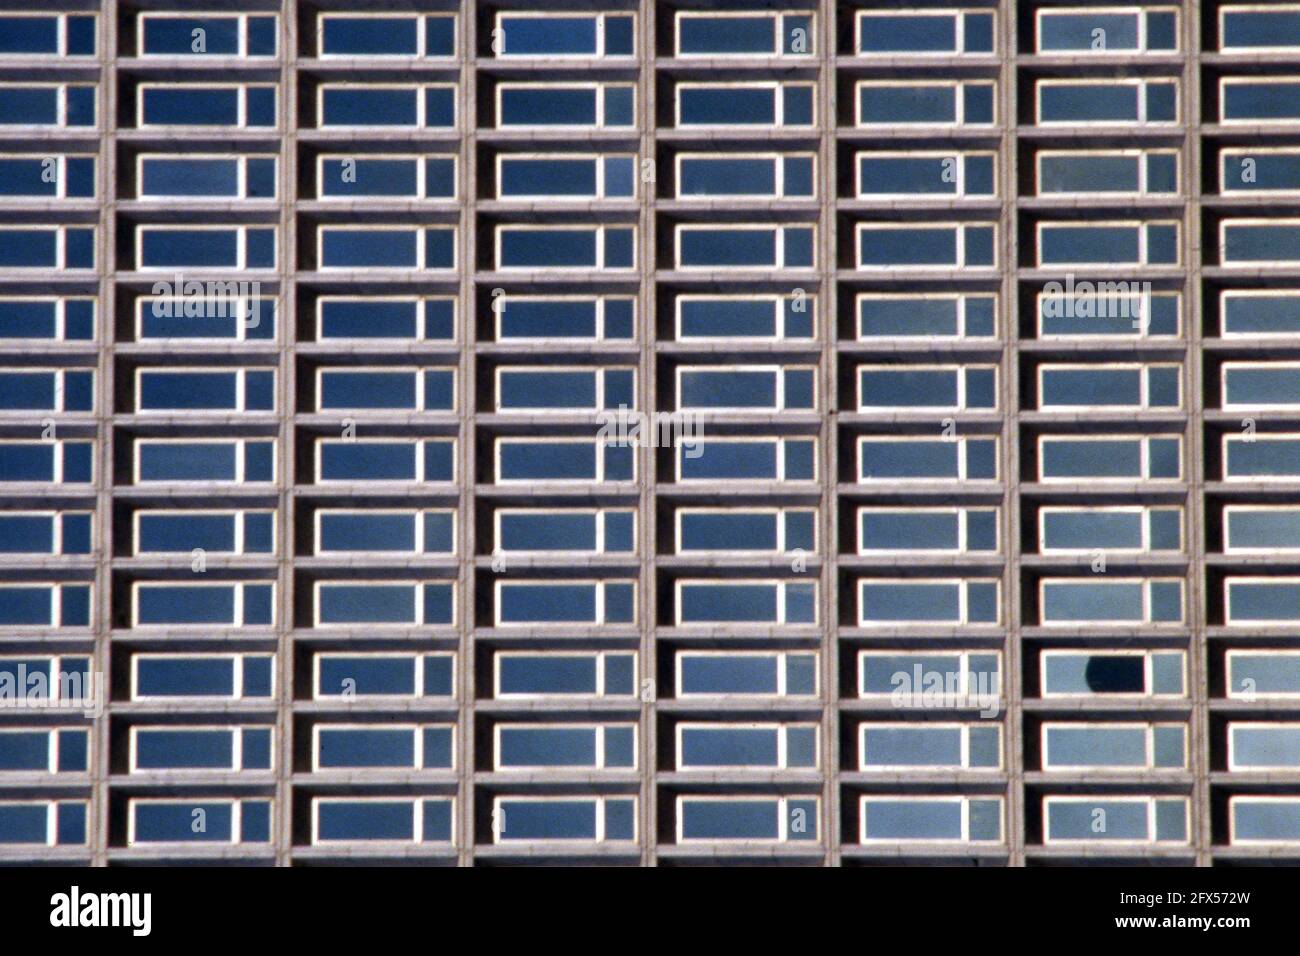 Windows of a skyscraper in Atlanta Stock Photo